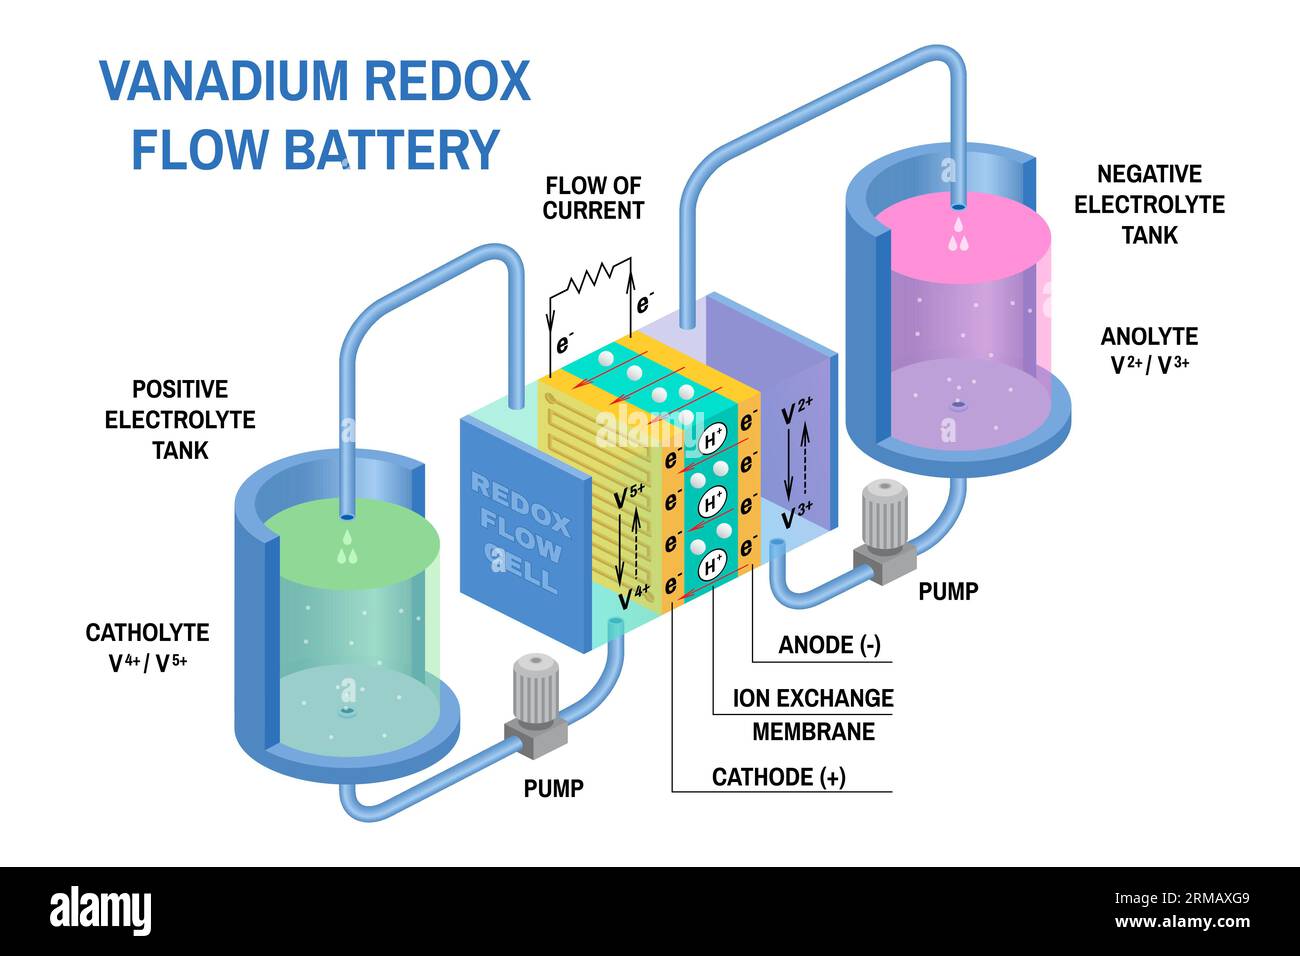 Diagramm der Redox-Flow-Batterien. Vektor. Gerät, das potenzielle chemische Energie in elektrische Energie umwandelt. Elektrochemische Zelle, wo chemisch Stock Vektor